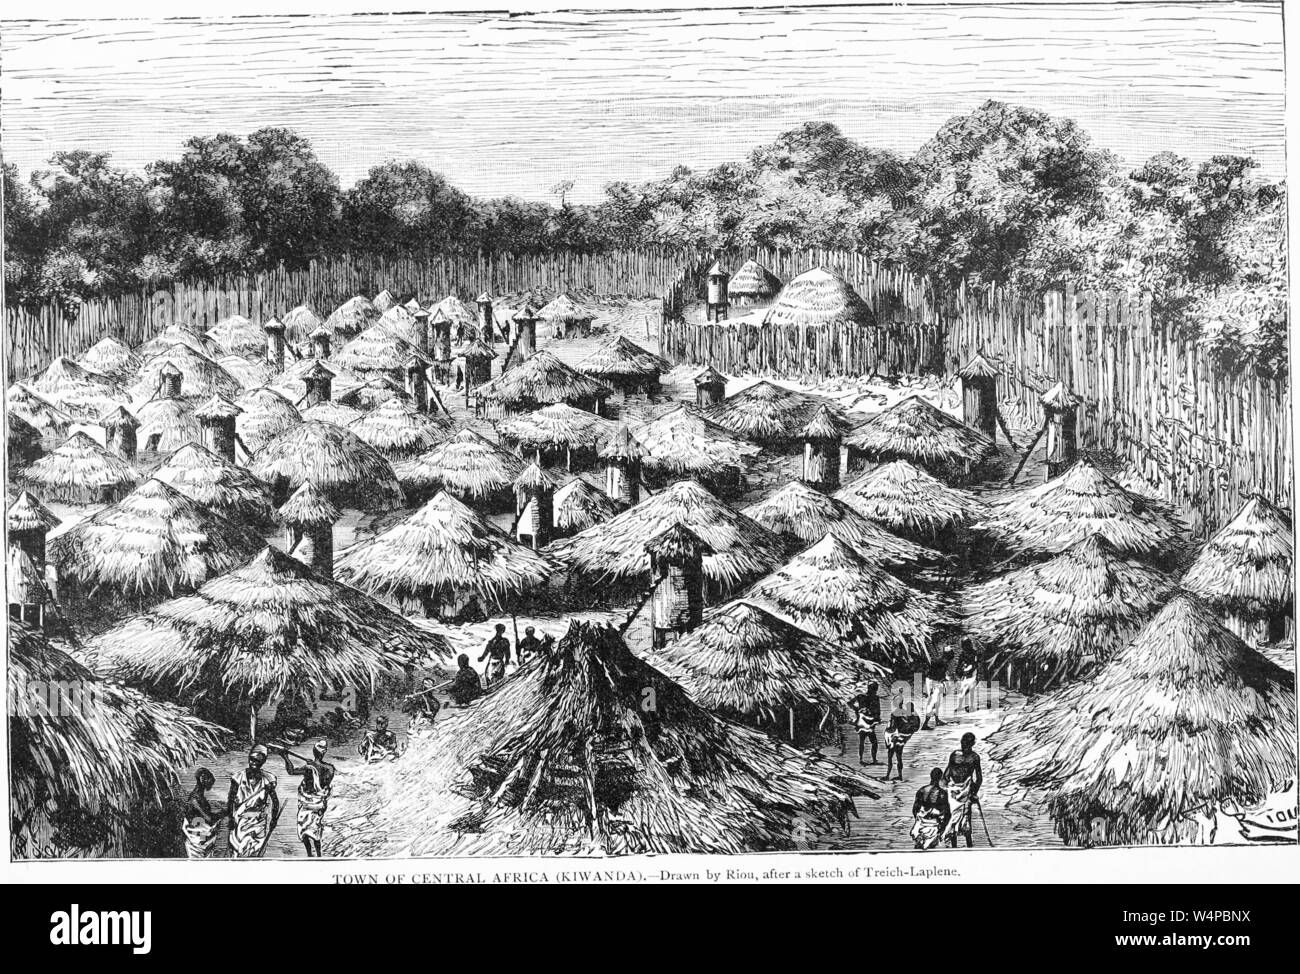 Il disegno inciso del Kiwanda, città dell Africa Centrale, dal libro "Ridpath della storia universale" di John Clark Ridpath, 1897. La cortesia Internet Archive. () Foto Stock